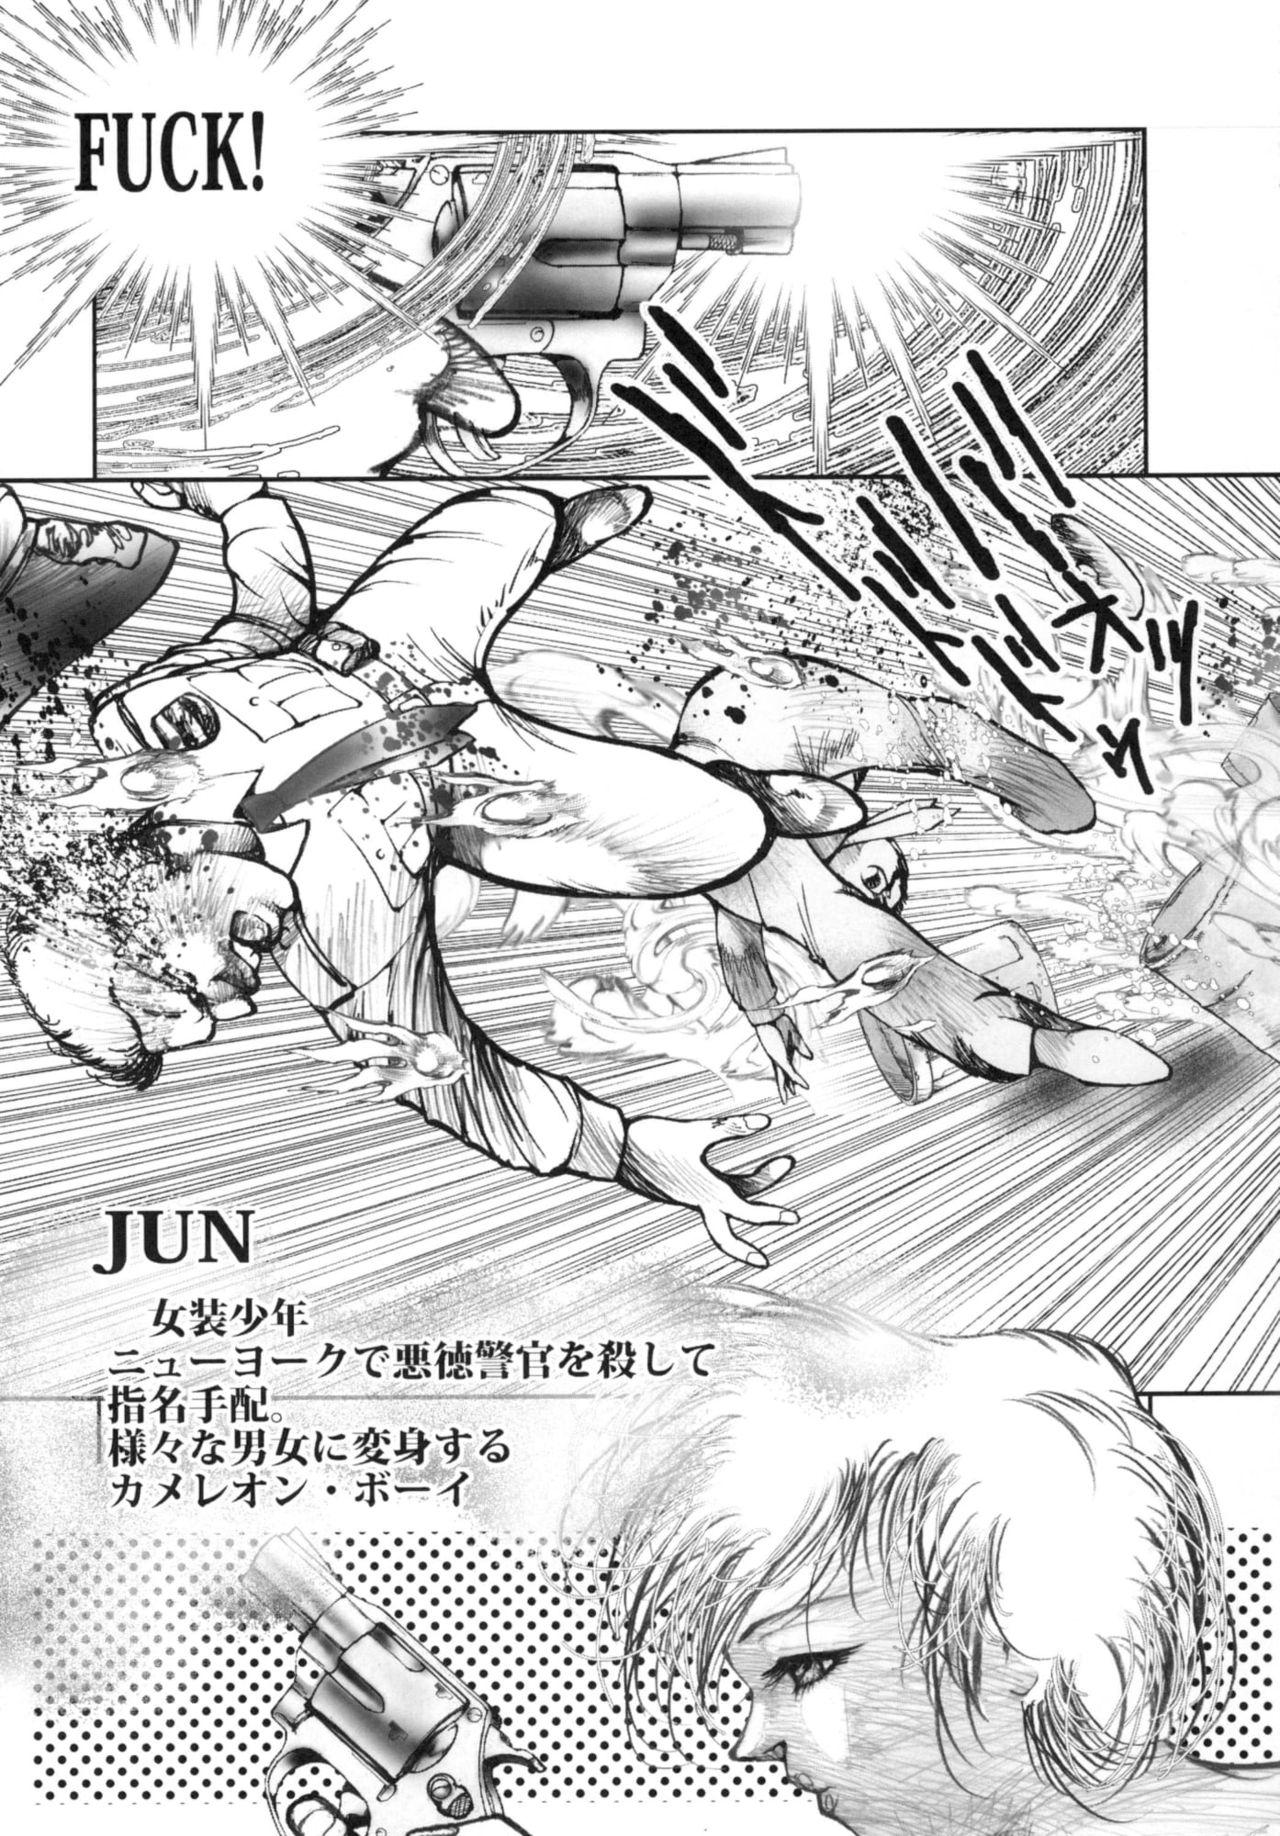  Chain Heat - Original Himitsu no akko-chan Majokko megu-chan Teenies - Page 5